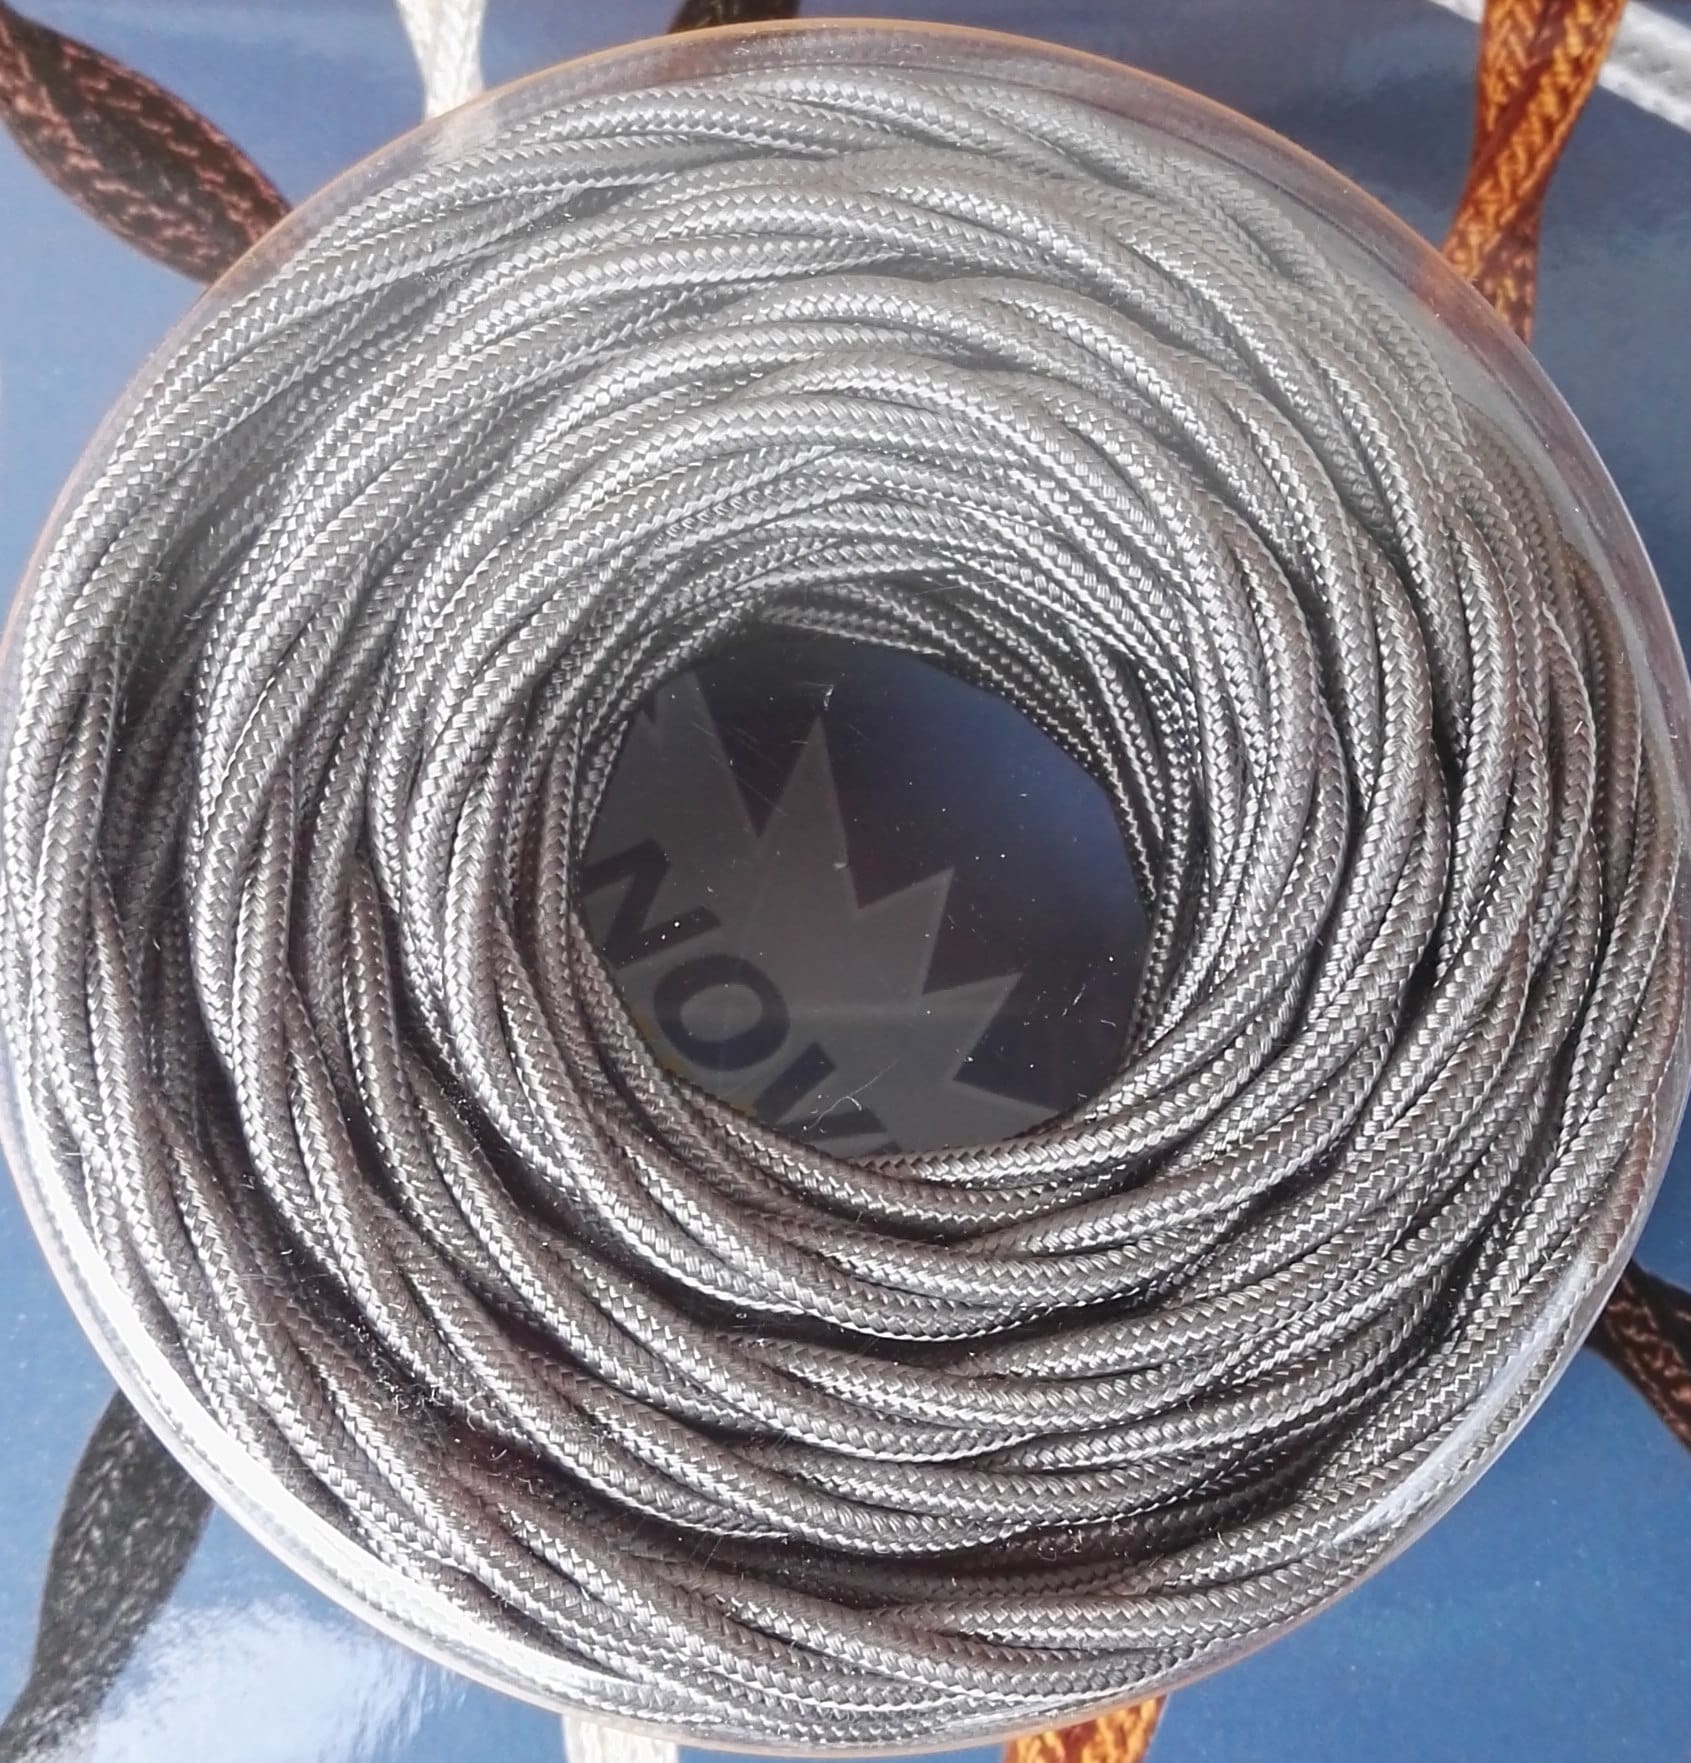 SK kabel točený, syntetické hedvábí, 3 x 0,75 mmq, šedý